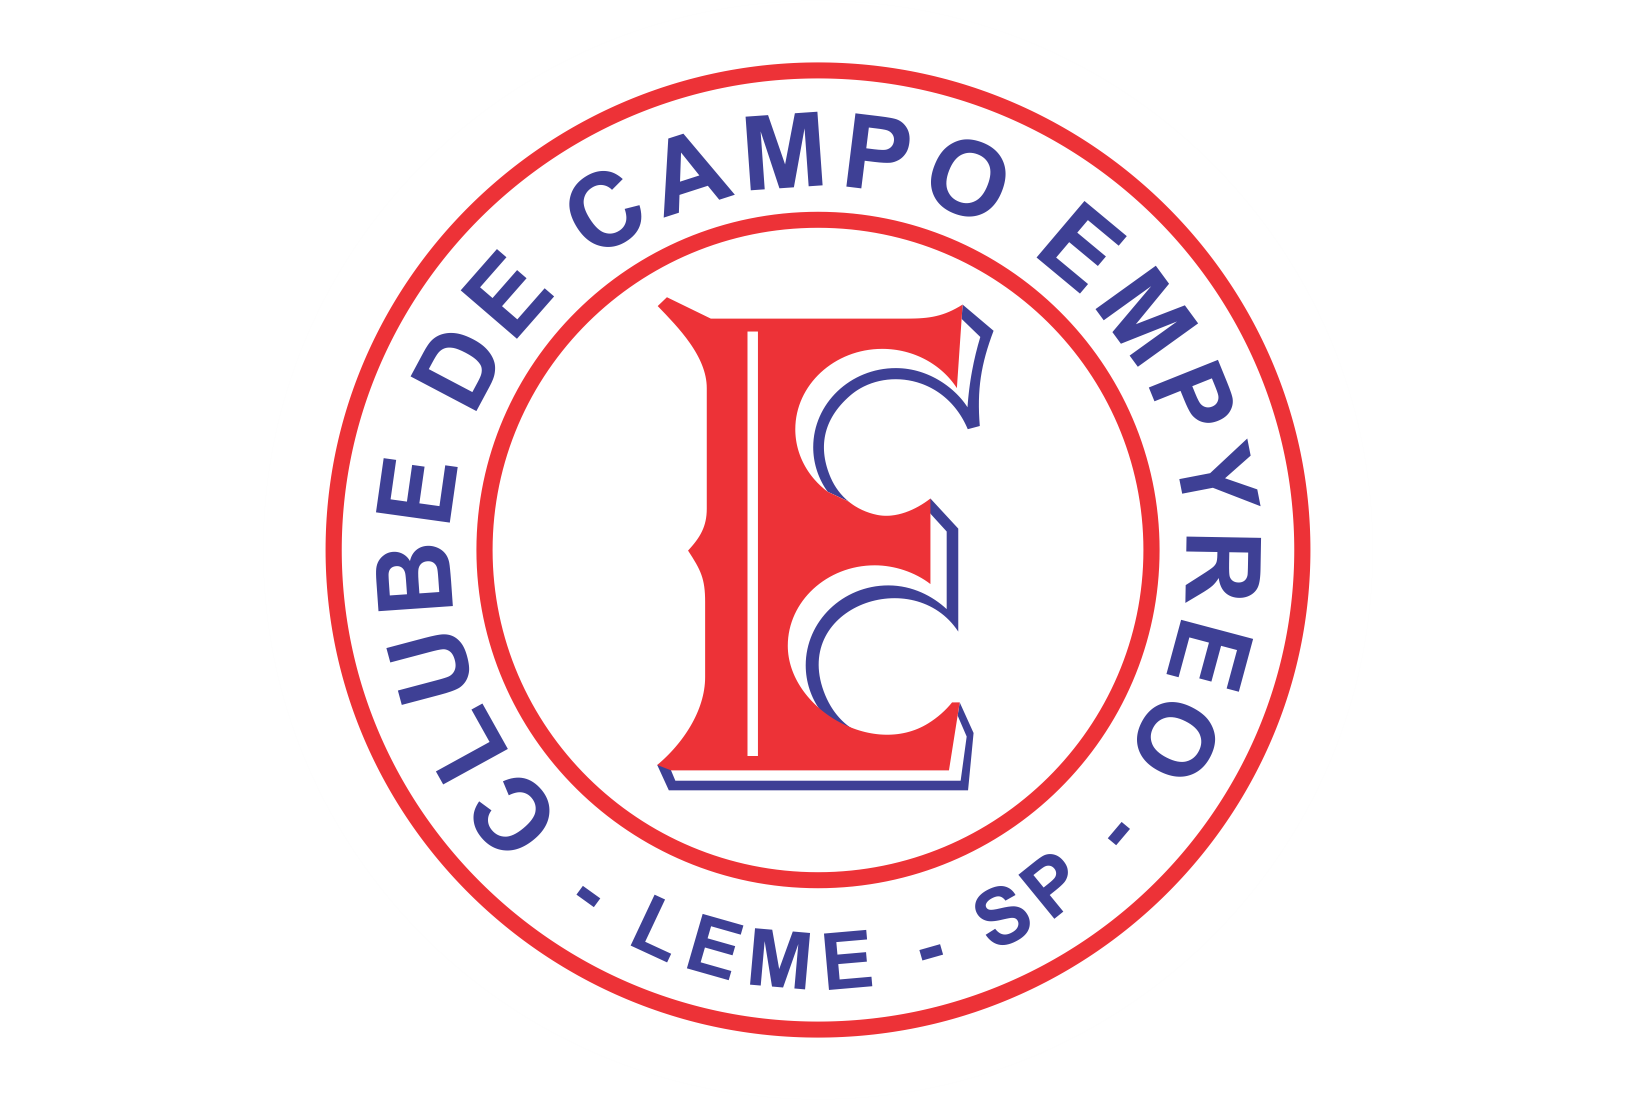 Clube de Campo Empyreo